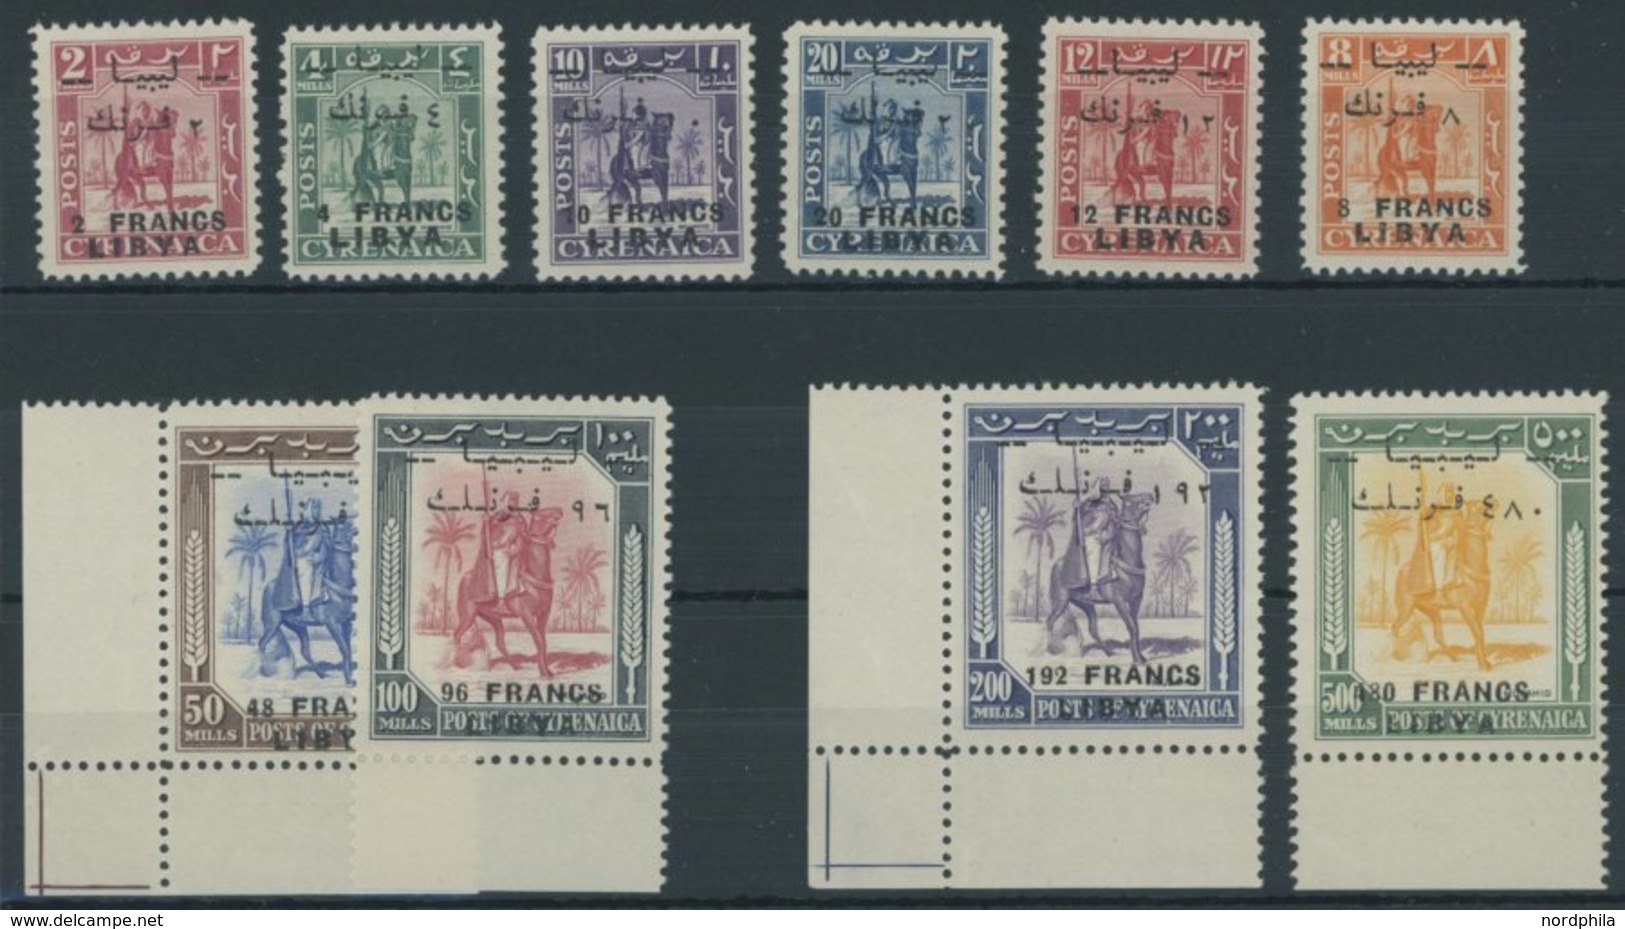 LIBYEN 14-23 **, 1951, Senussi-Kampfreiter, Aufdruck Auch In Französischer Währung, Postfrischer Prachtsatz, Signiert Zu - Libië